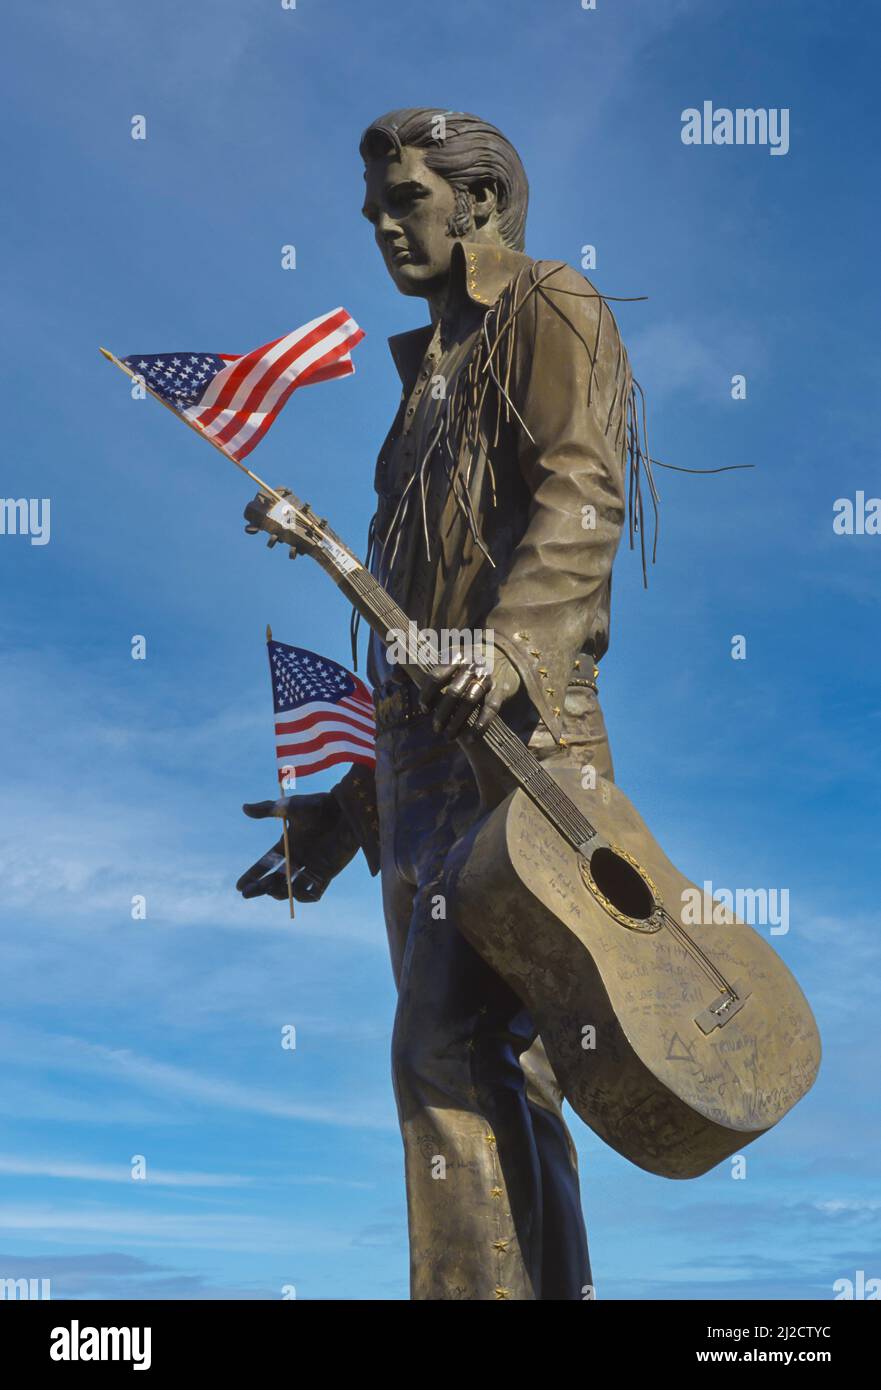 MEMPHIS, TENNESSEE, États-Unis - Statue du musicien Elvis Presley, sur Beale Street, avec drapeaux américains. Banque D'Images